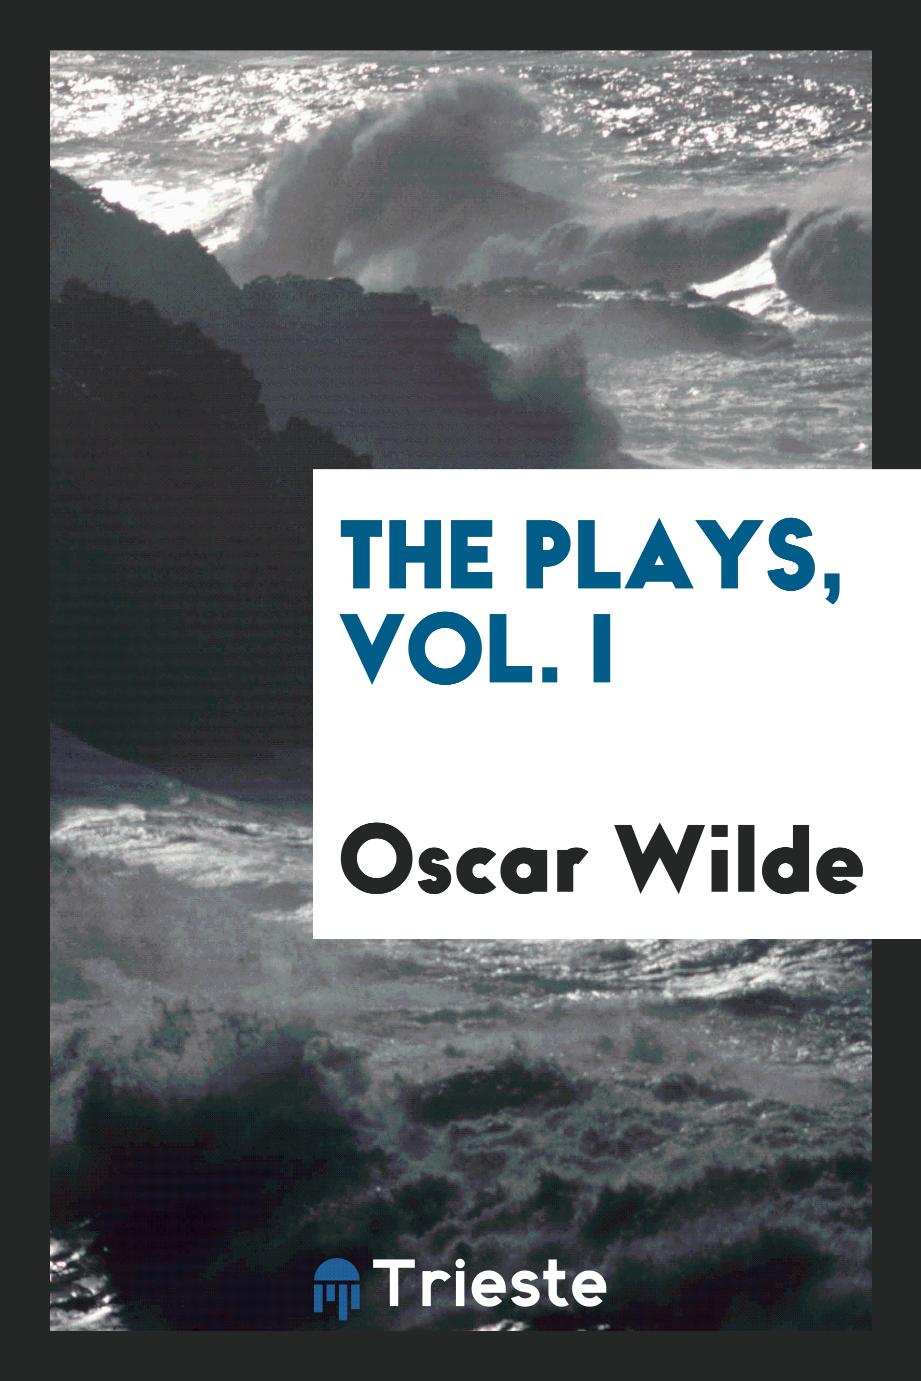 The plays, Vol. I